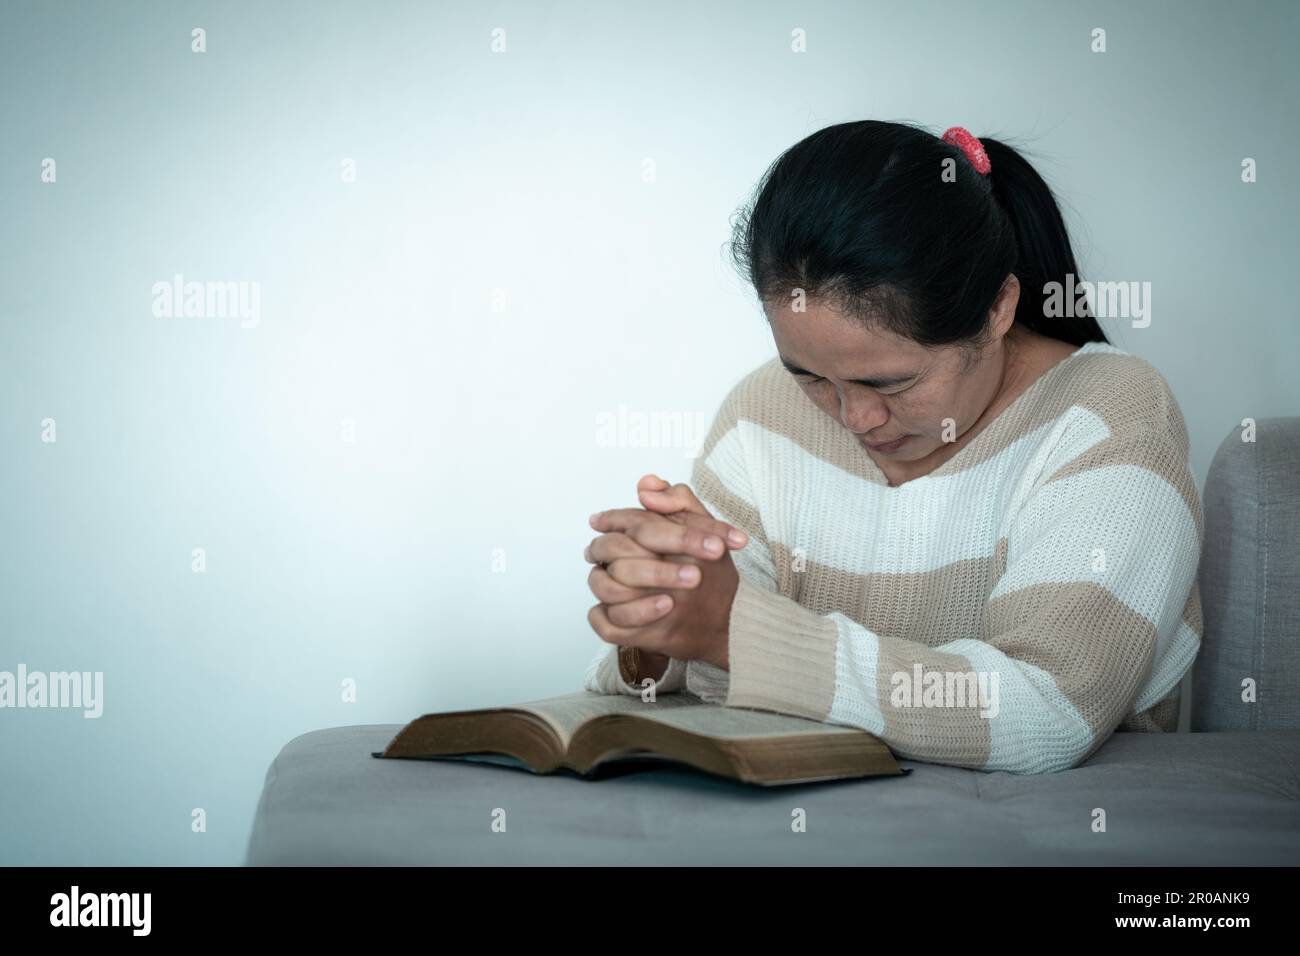 Frau kniet und betet in einem modernen Haus bei Sonnenuntergang. Weibliche katholische Gebete verehren Gott und wünschen ein besseres Leben im Morgengrauen mit Glauben Stockfoto